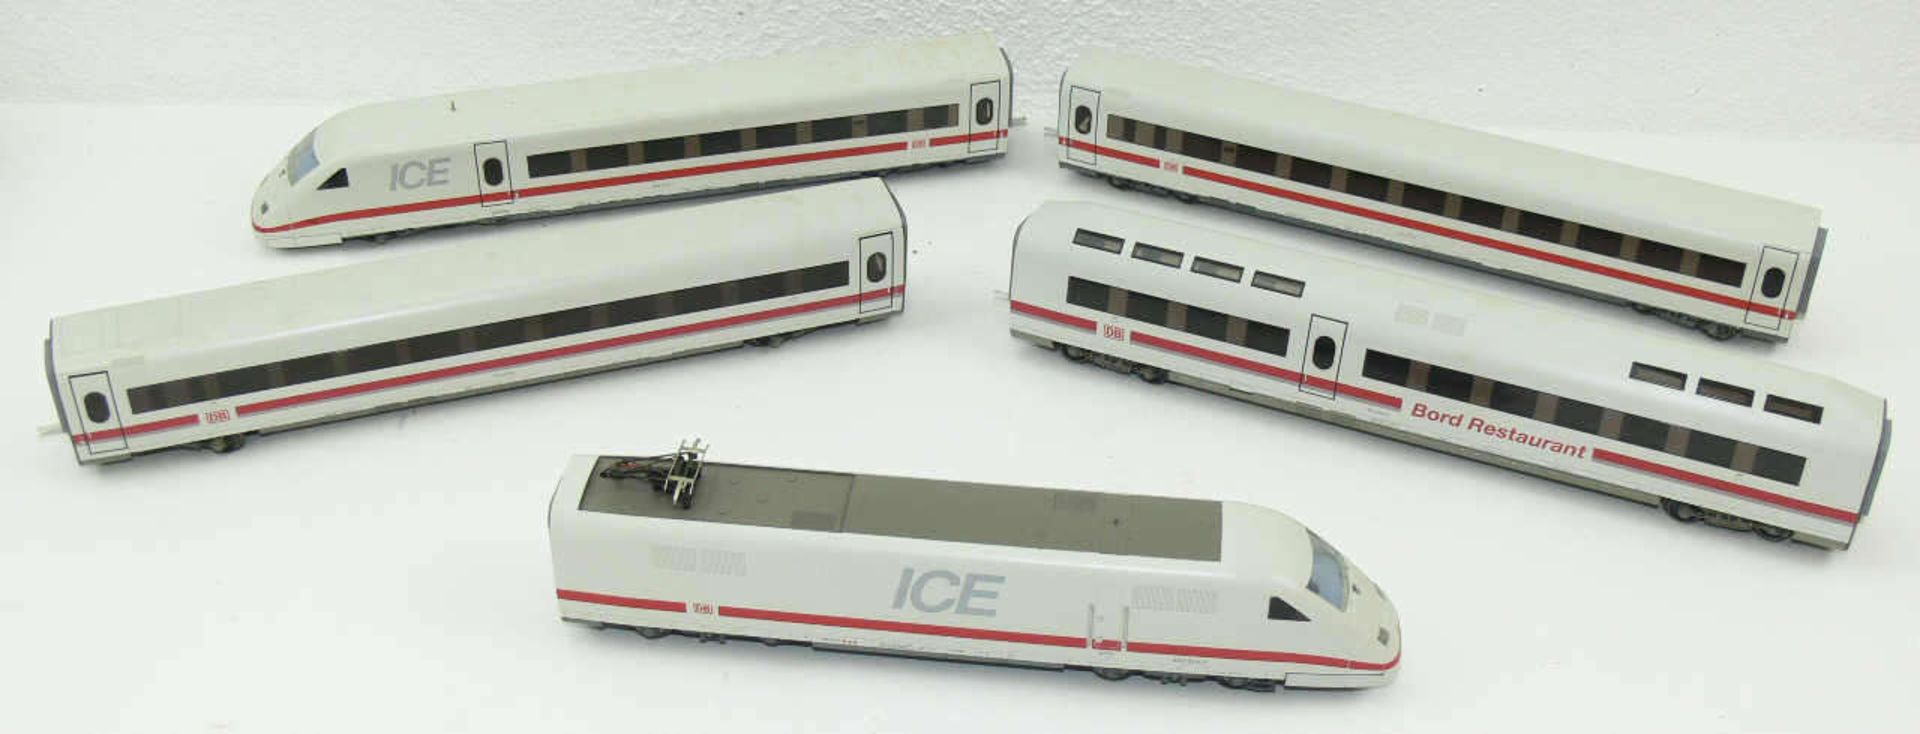 Märklin ICE - Zug, bestehend aus: Triebwagen, 2 x Großraumwagen und Bord - Restaurant.